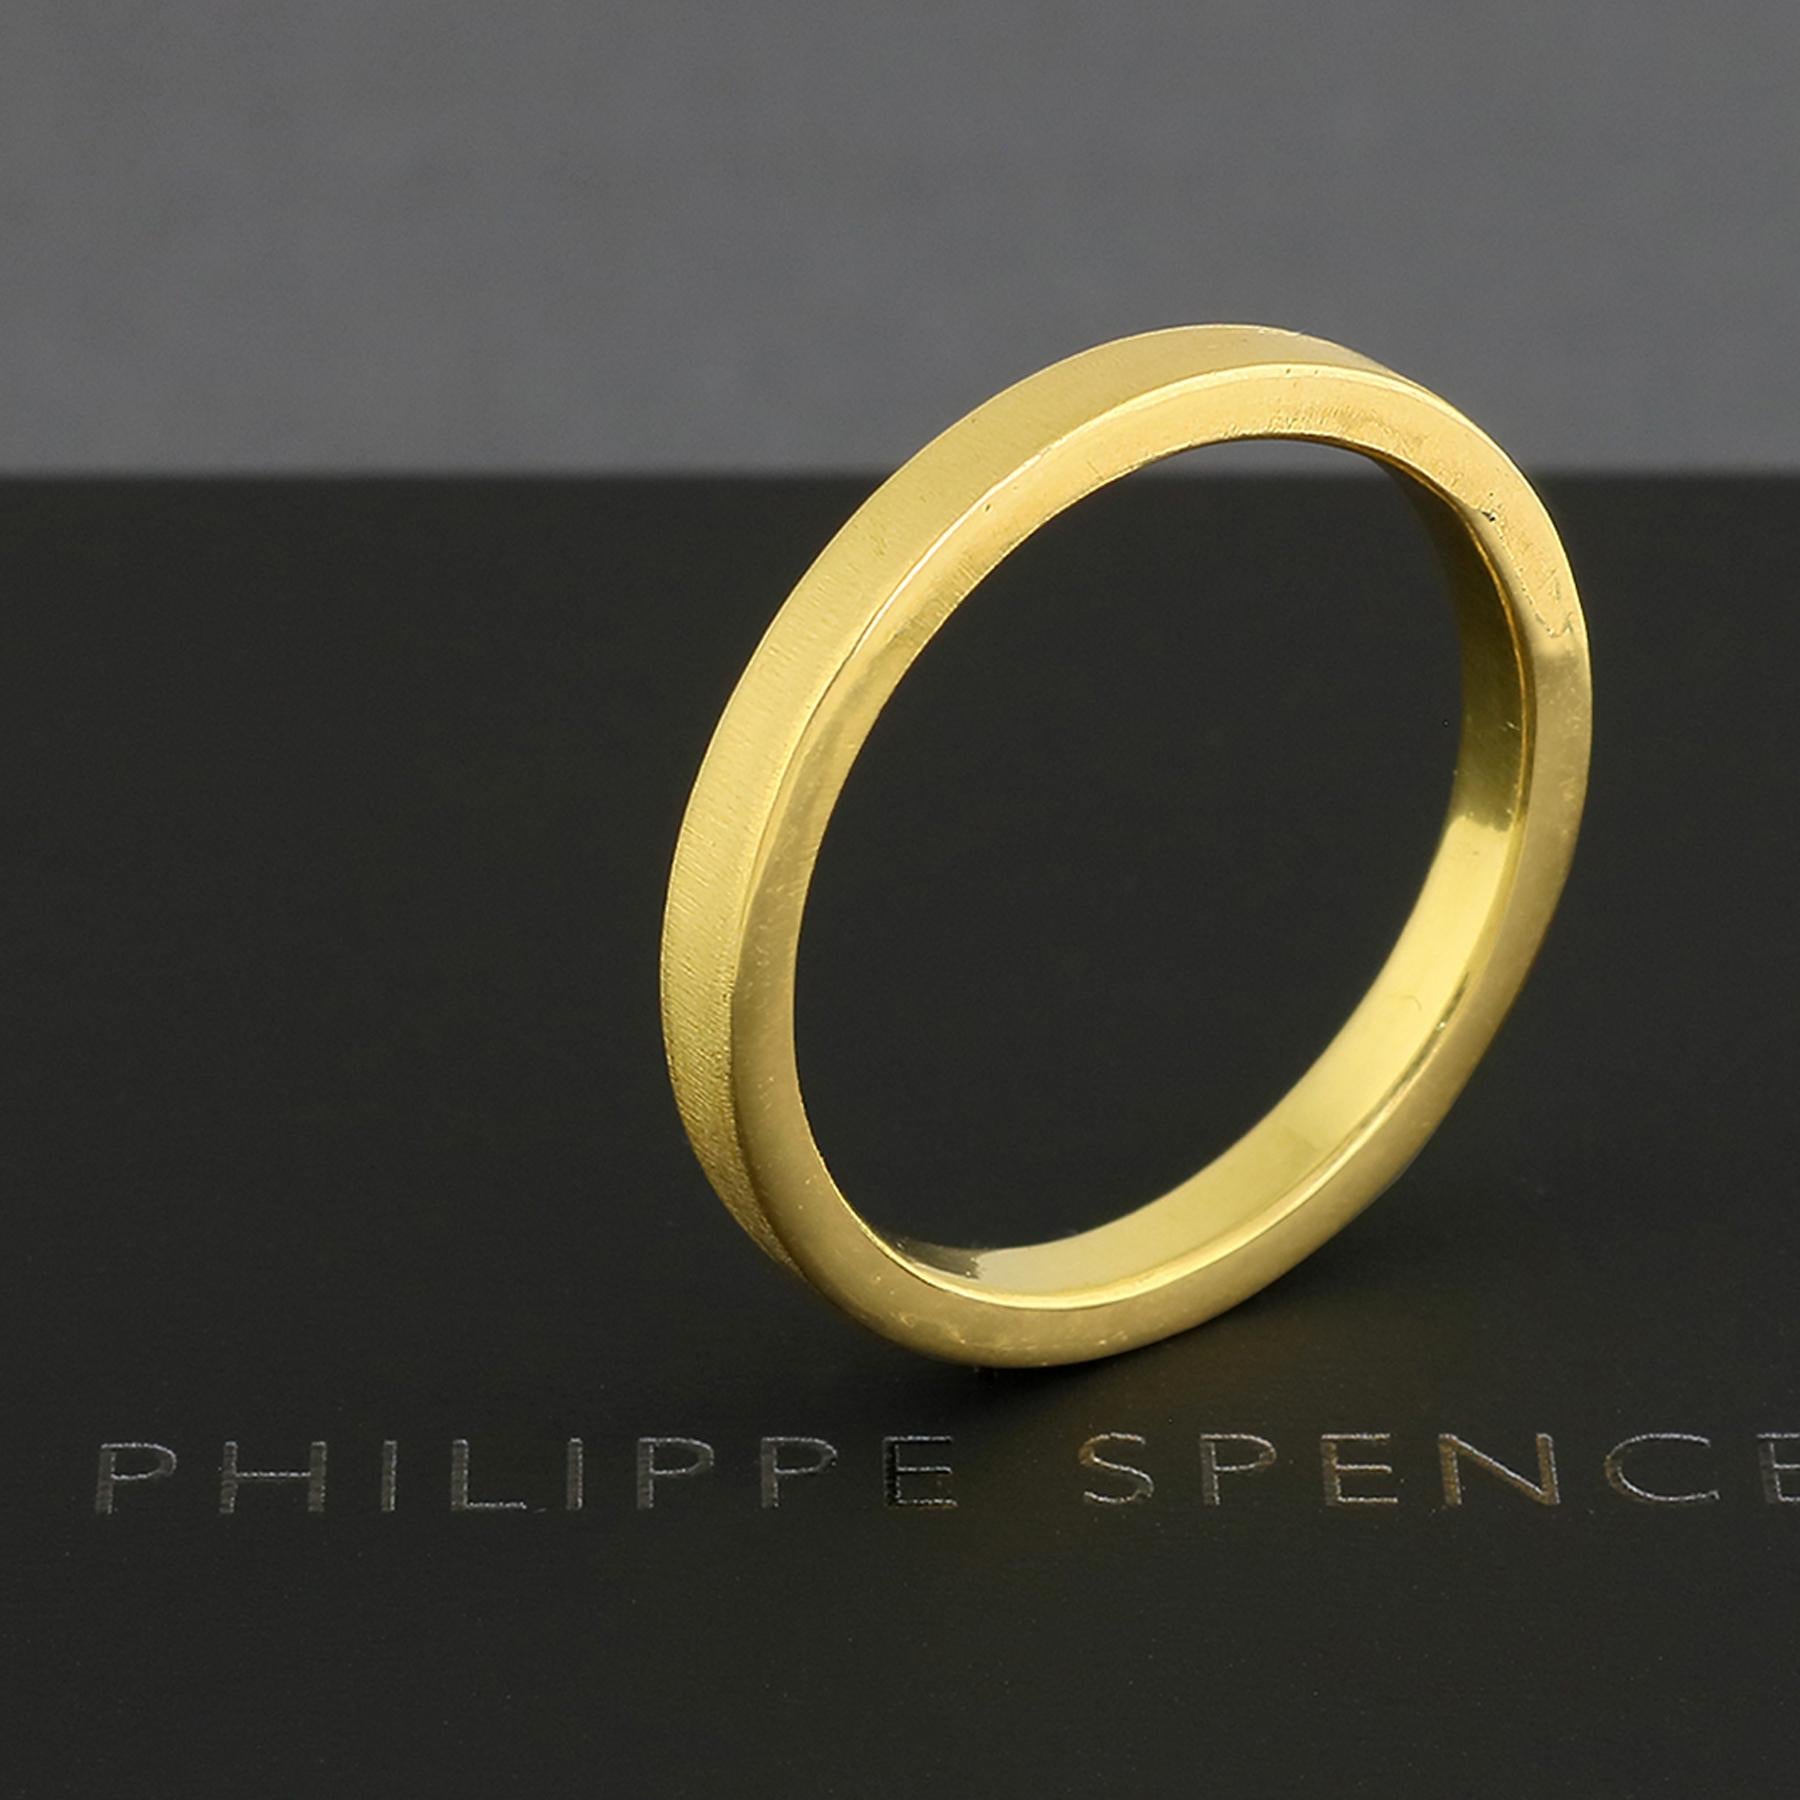 PHILIPPE-SPENCER - 2.75 X 2mm massiv 20K Gold Hand & Amboss geschmiedet Band. Außen stark mattiert, innen spiegelpoliert.  Jedes ist ein einzigartiges Kunstwerk.

Dieser vorrätige Artikel hat die Größe 10 und ist sofort versandbereit. Auf Anfrage